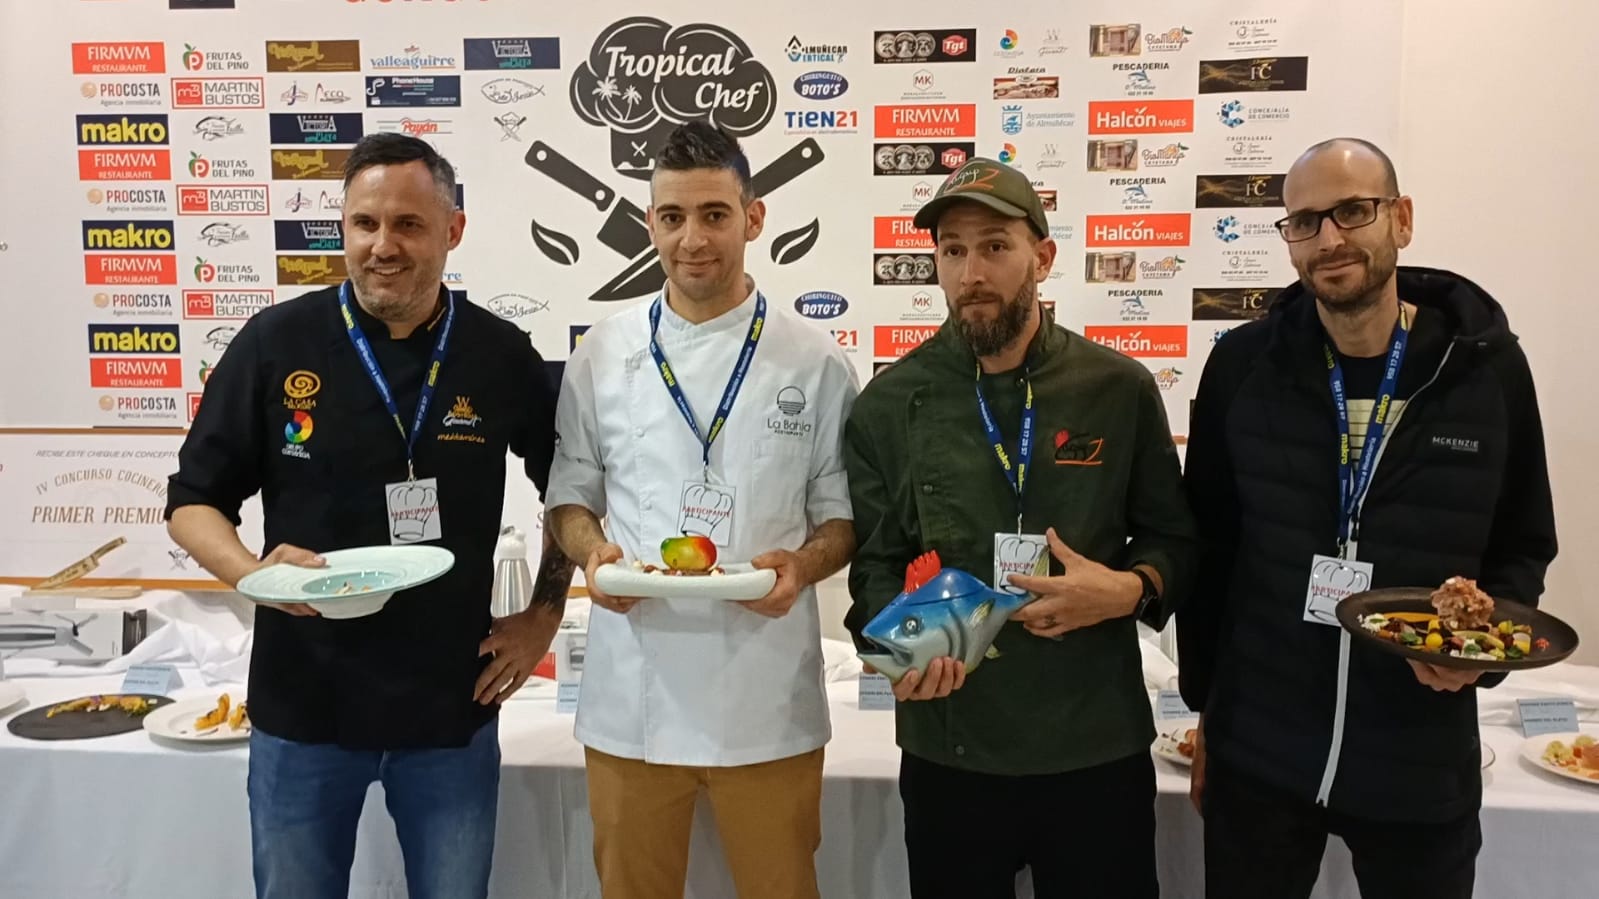 Cuatro cocineros disputarán la gran final del IV Concurso Tropical Chef de Almuñécar